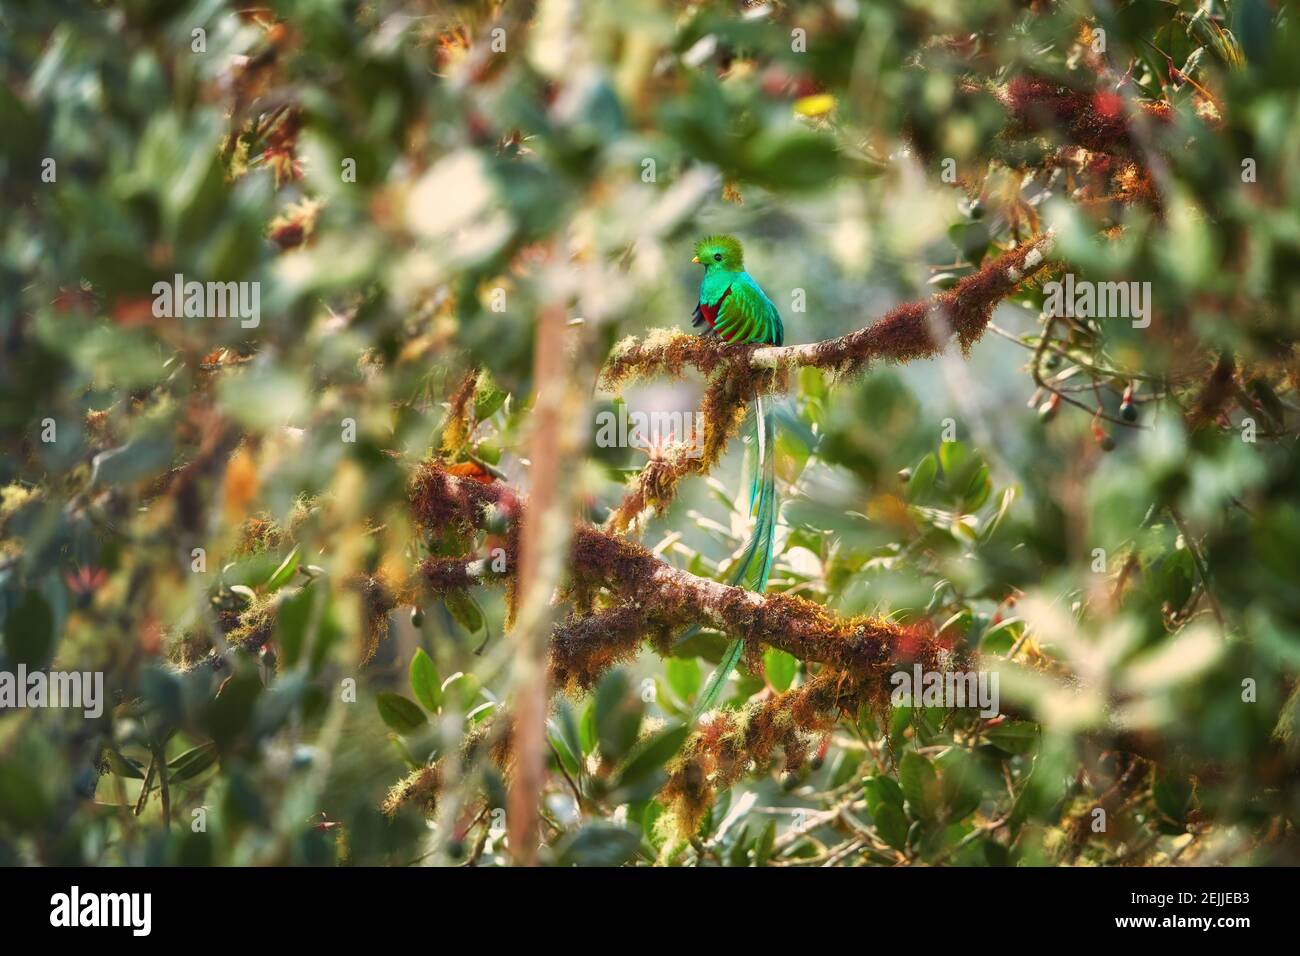 Bel oiseau. Le Quetzal resplendent dans son environnement naturel. Pharomachrus mocinno, oiseau tropical irisé à queue longue, assis dans un arbre d'avocat. Banque D'Images